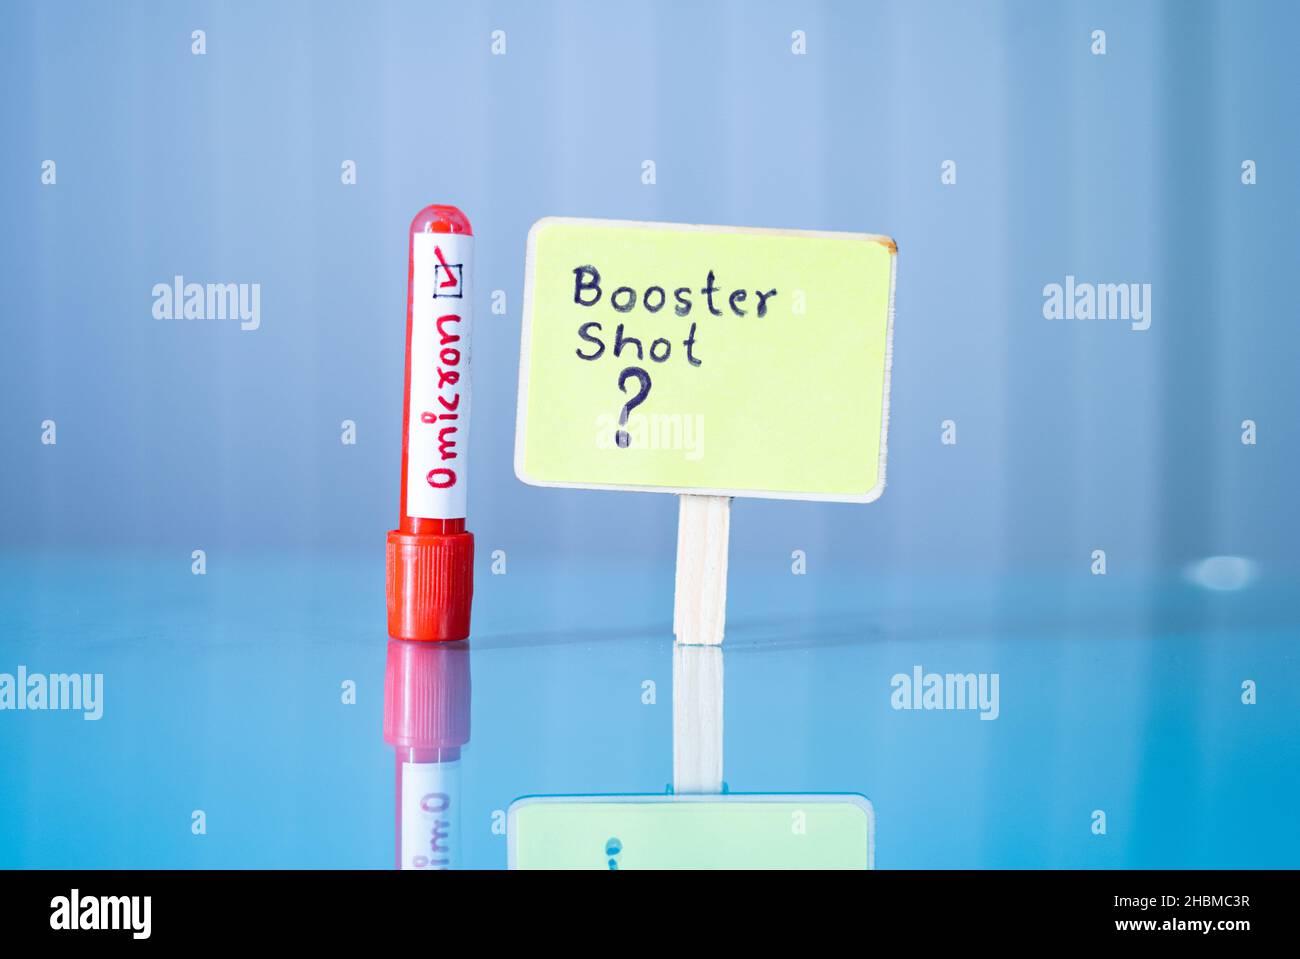 Booster Shot Fragezeichen Schild neben positiver Omicron Blutprobe platziert, Konzept zeigt wird Booster Shot Arbeit oder für neue Omicron benötigt Stockfoto